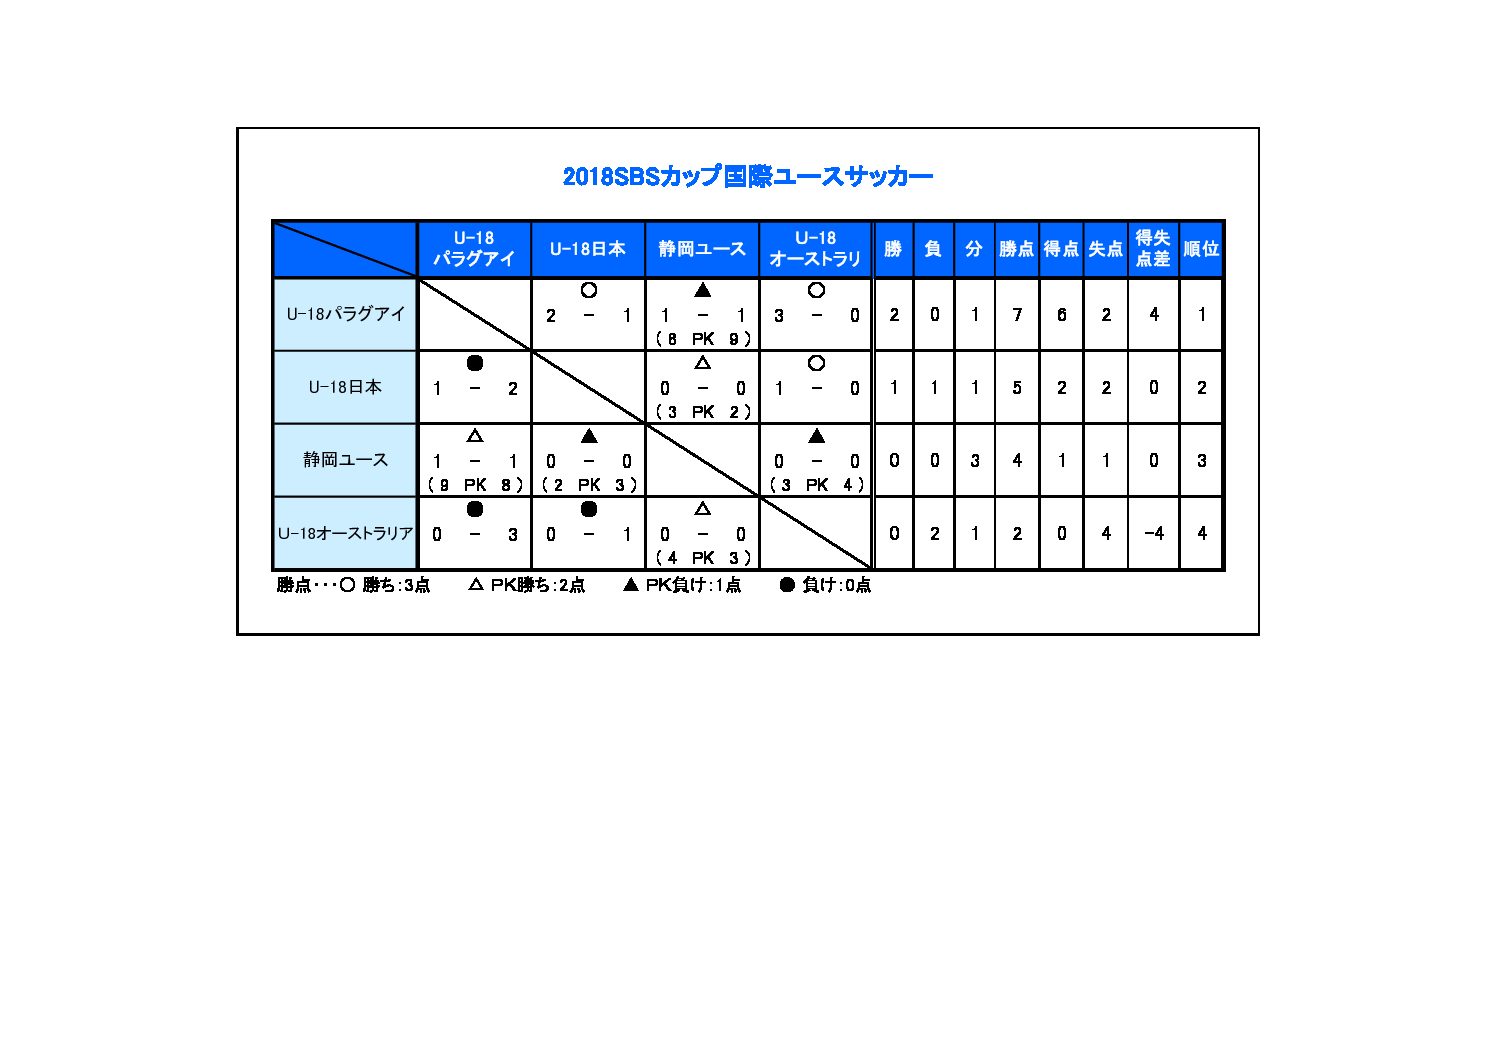 18sbsカップ国際ユースサッカー 一般財団法人 静岡県サッカー協会